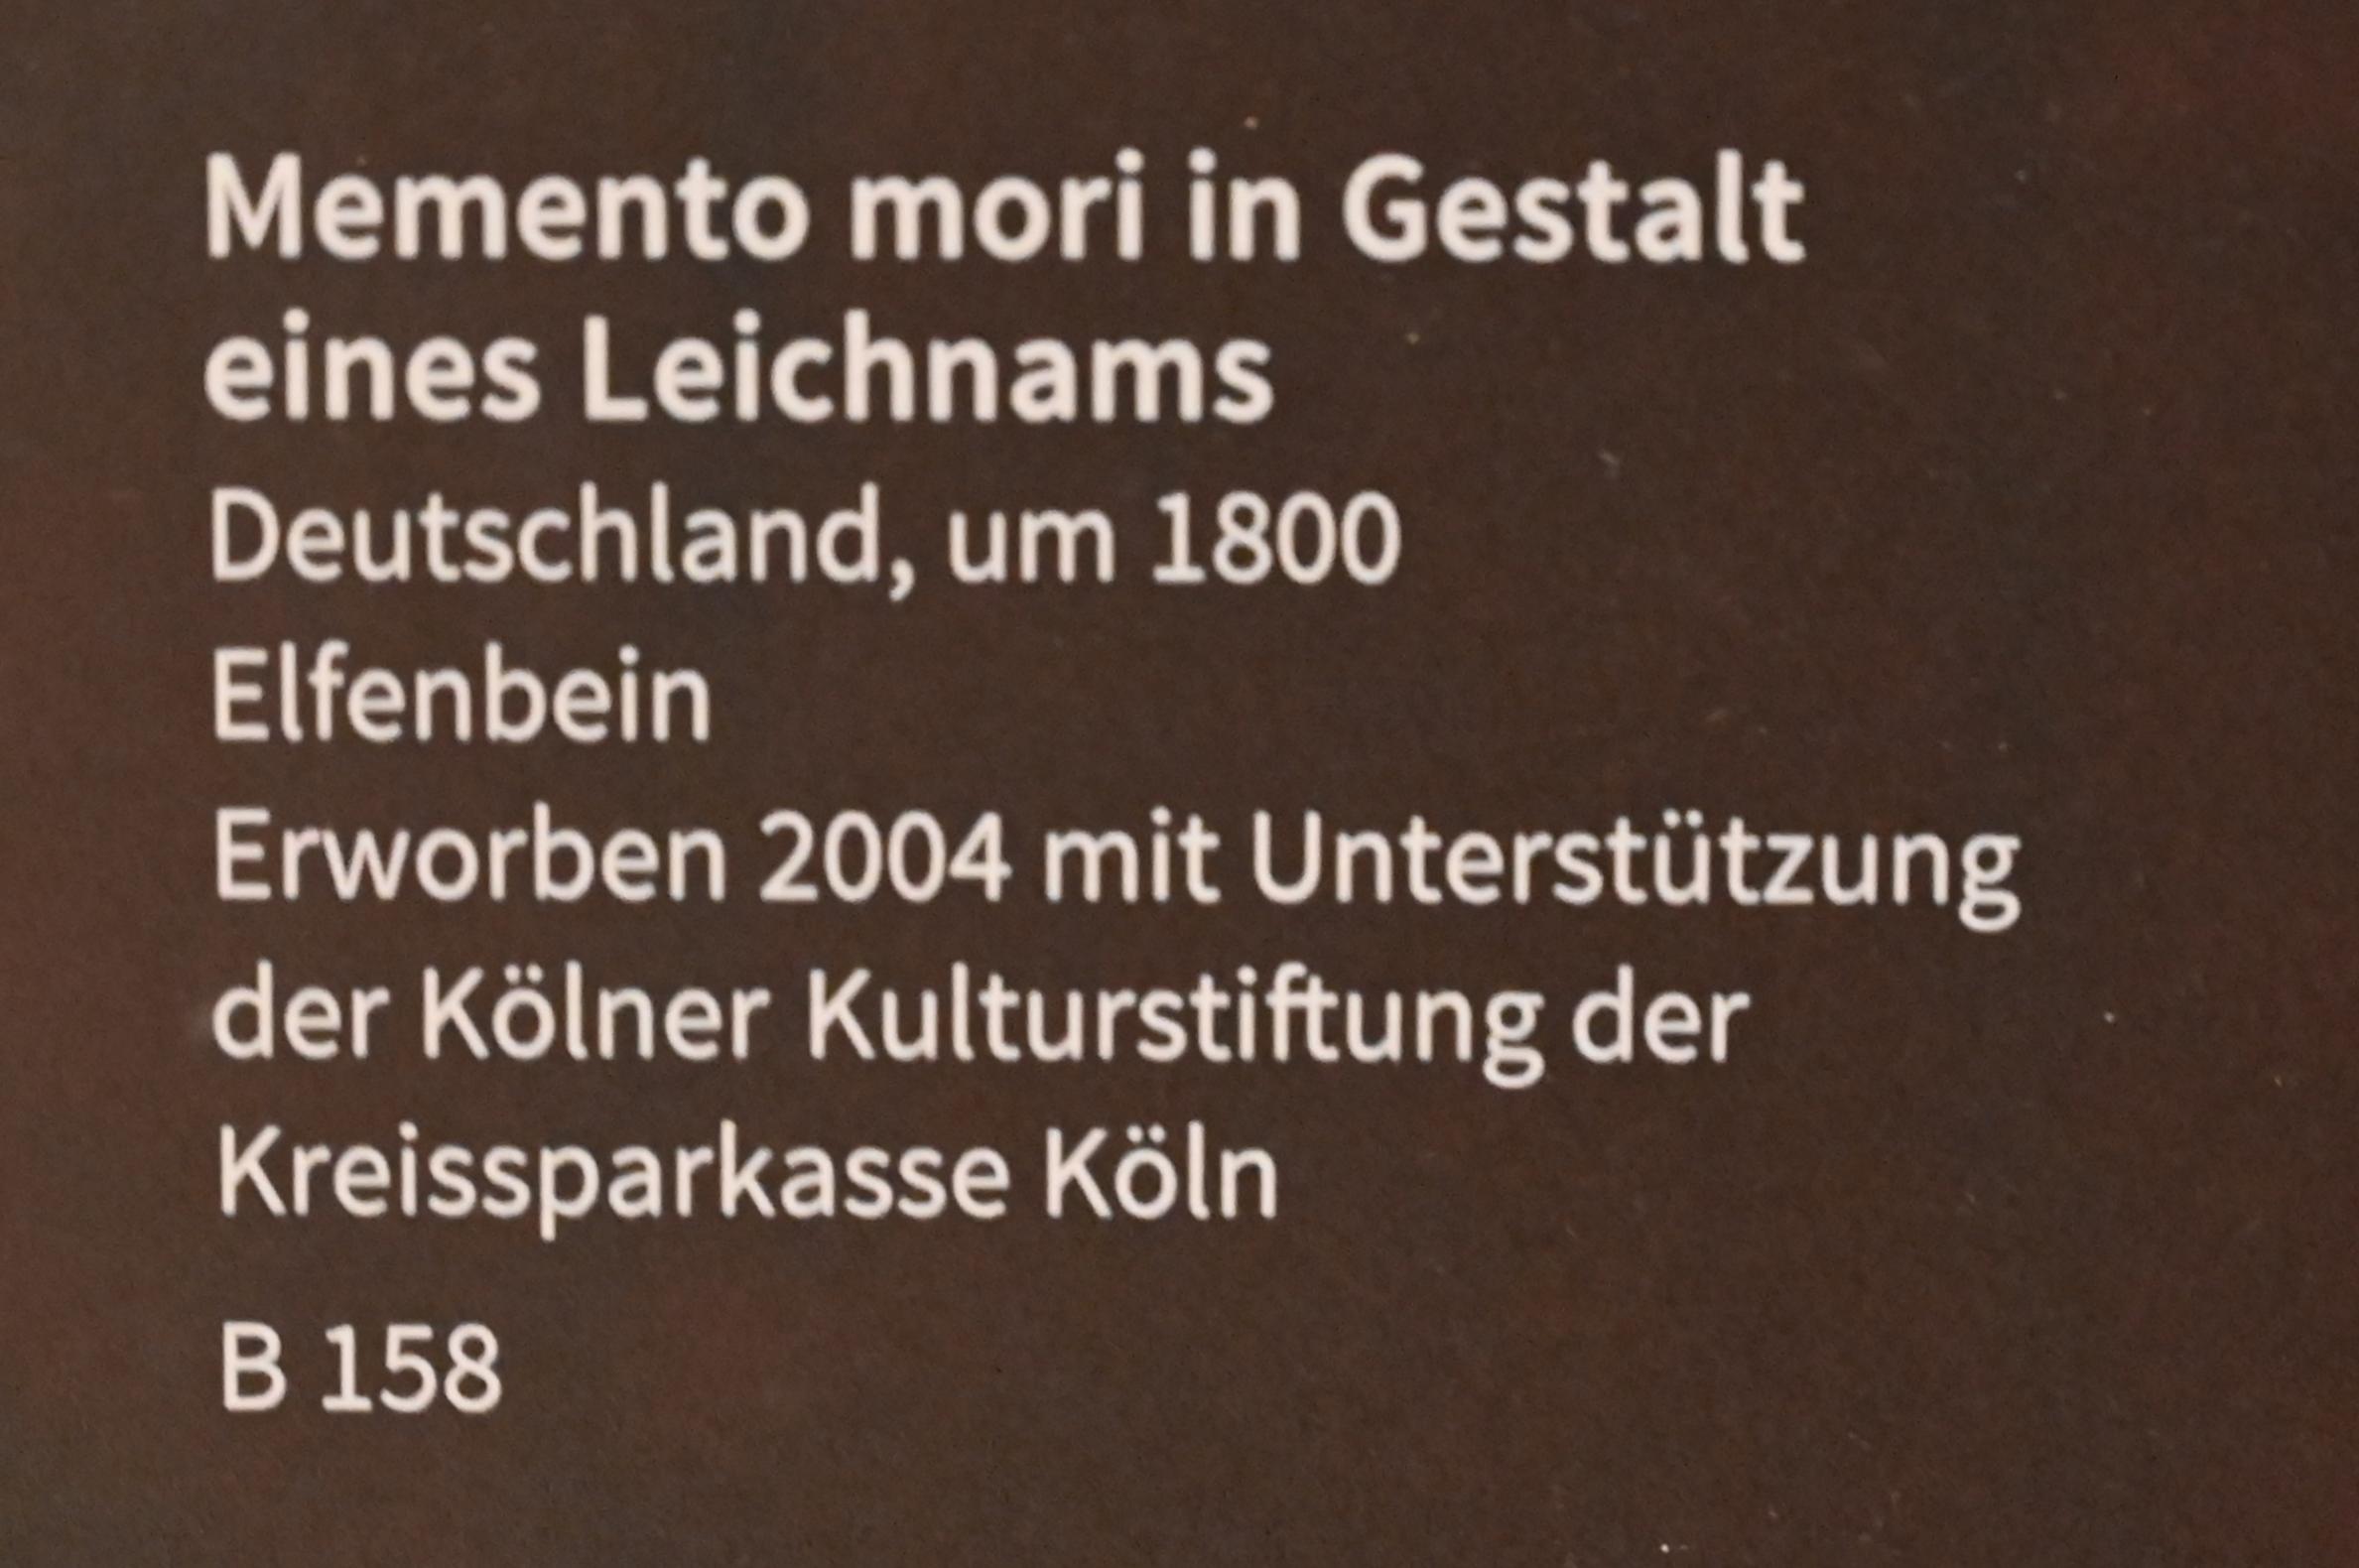 Memento mori in Gestalt eines Leichnams, Köln, Museum Schnütgen, Saal 5, um 1800, Bild 2/2